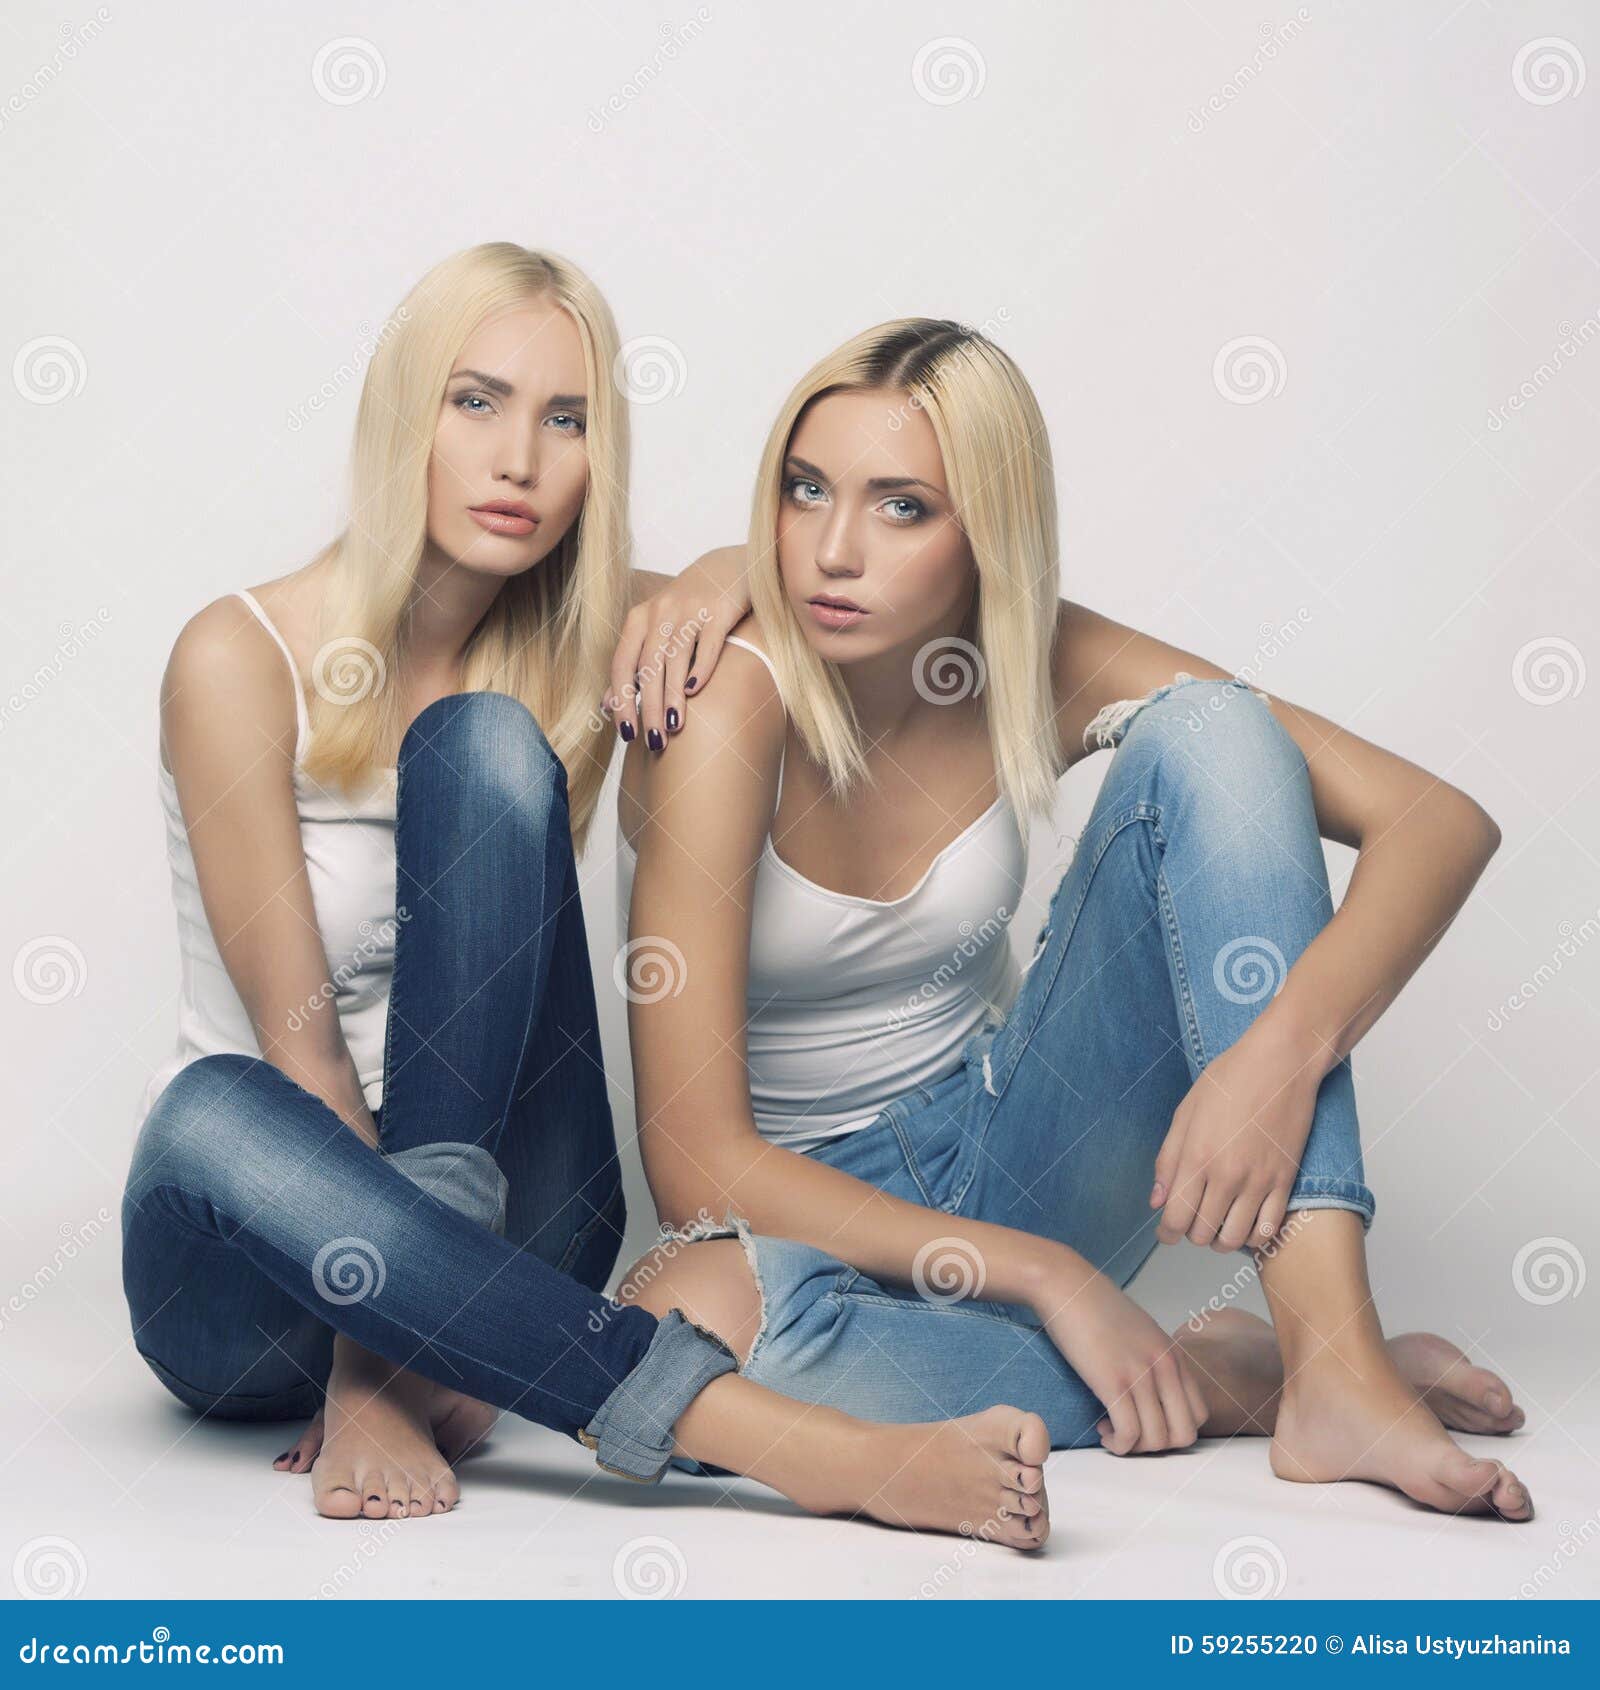 Голые близнецы покажут свои сокровища (27 фото эротики)